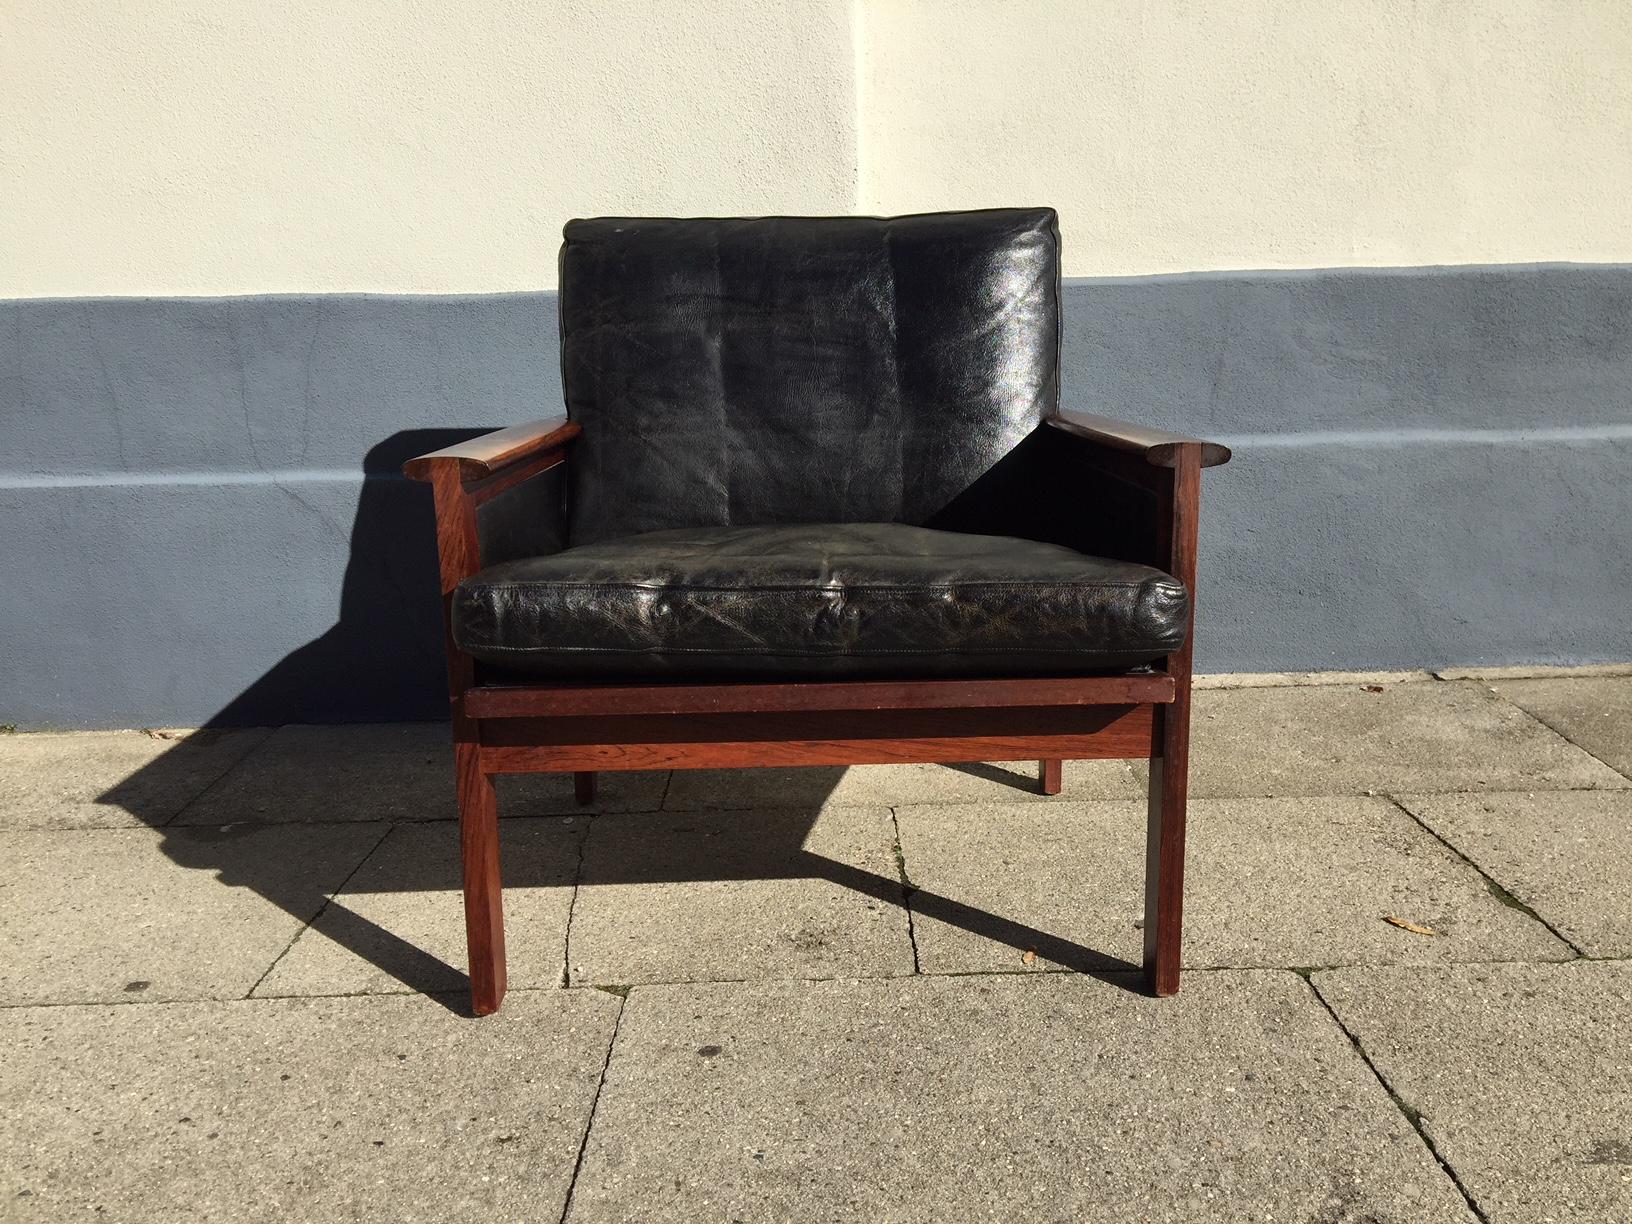 Cette chaise longue n° 4 ou chaise Capella a été conçue par Illum Wikkelsø en 1959 et fabriquée par Niels Erik Eilersen au début des années 1960. Il présente une sellerie originale en cuir noir et un cadre, une assise et des accoudoirs en bois de